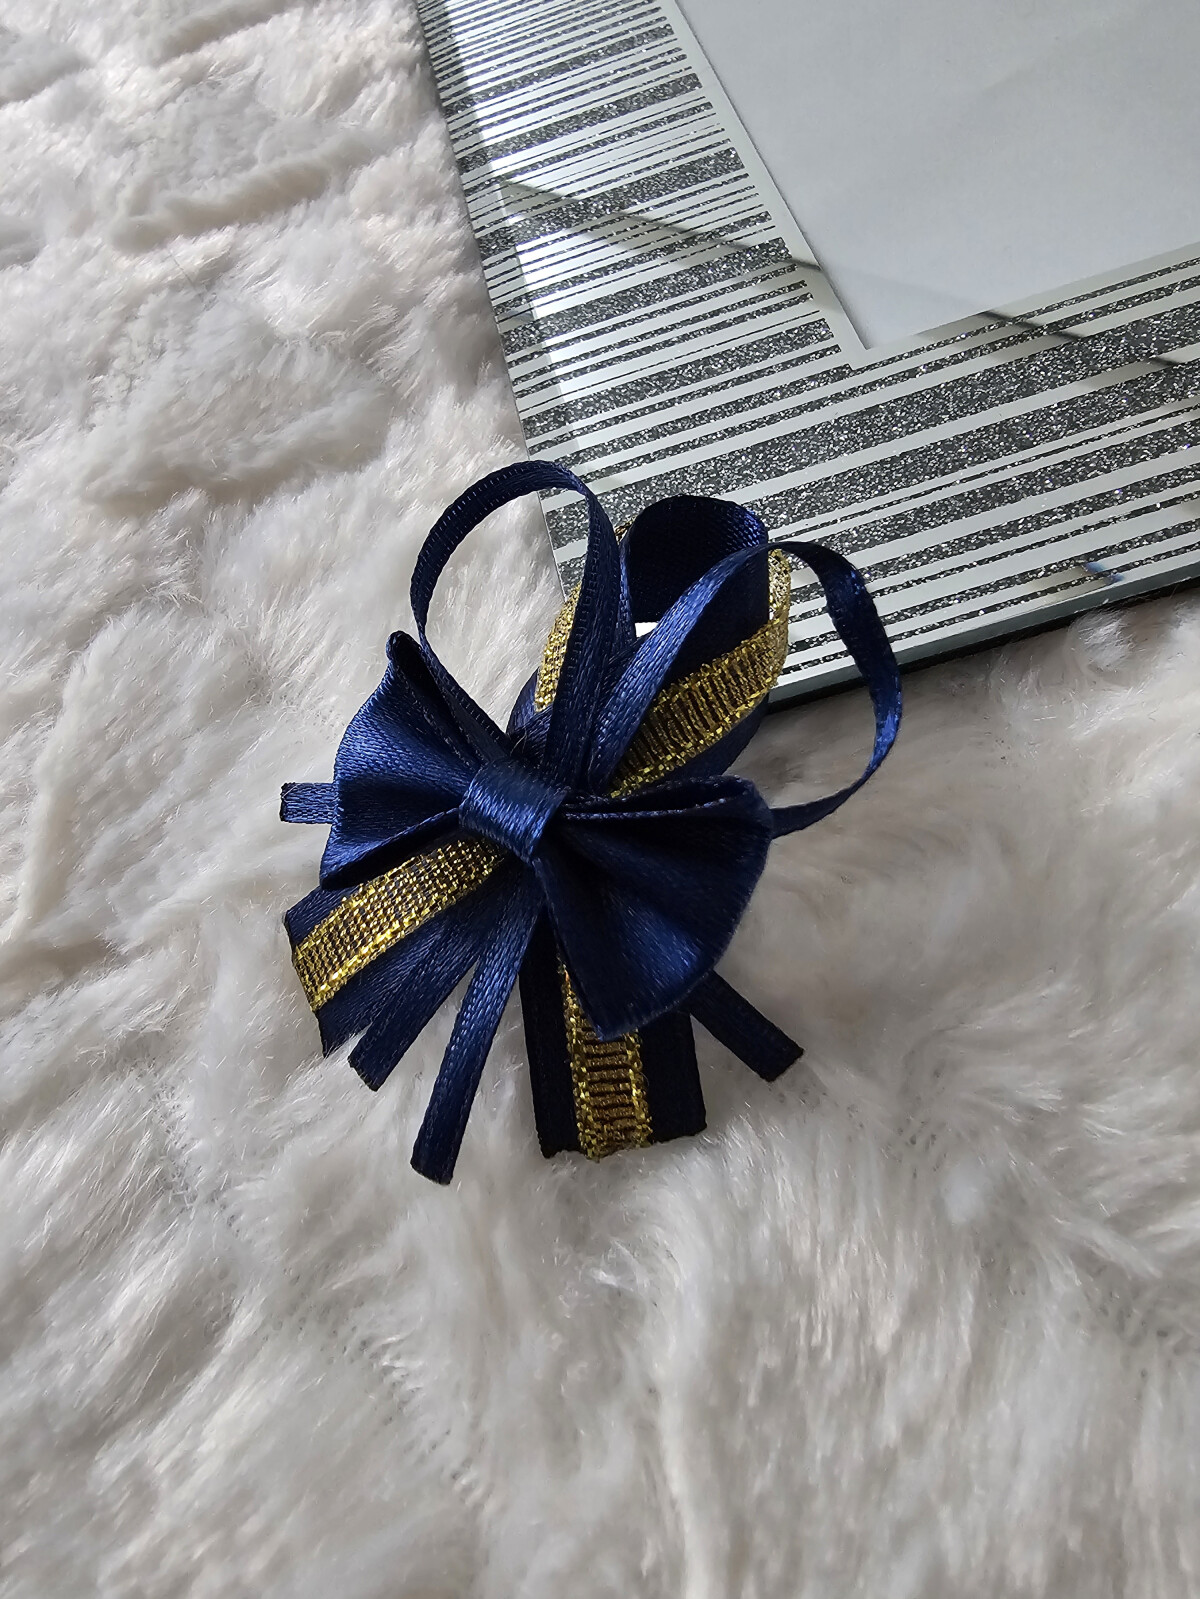 Przypinki dla gości weselnych + navy blue